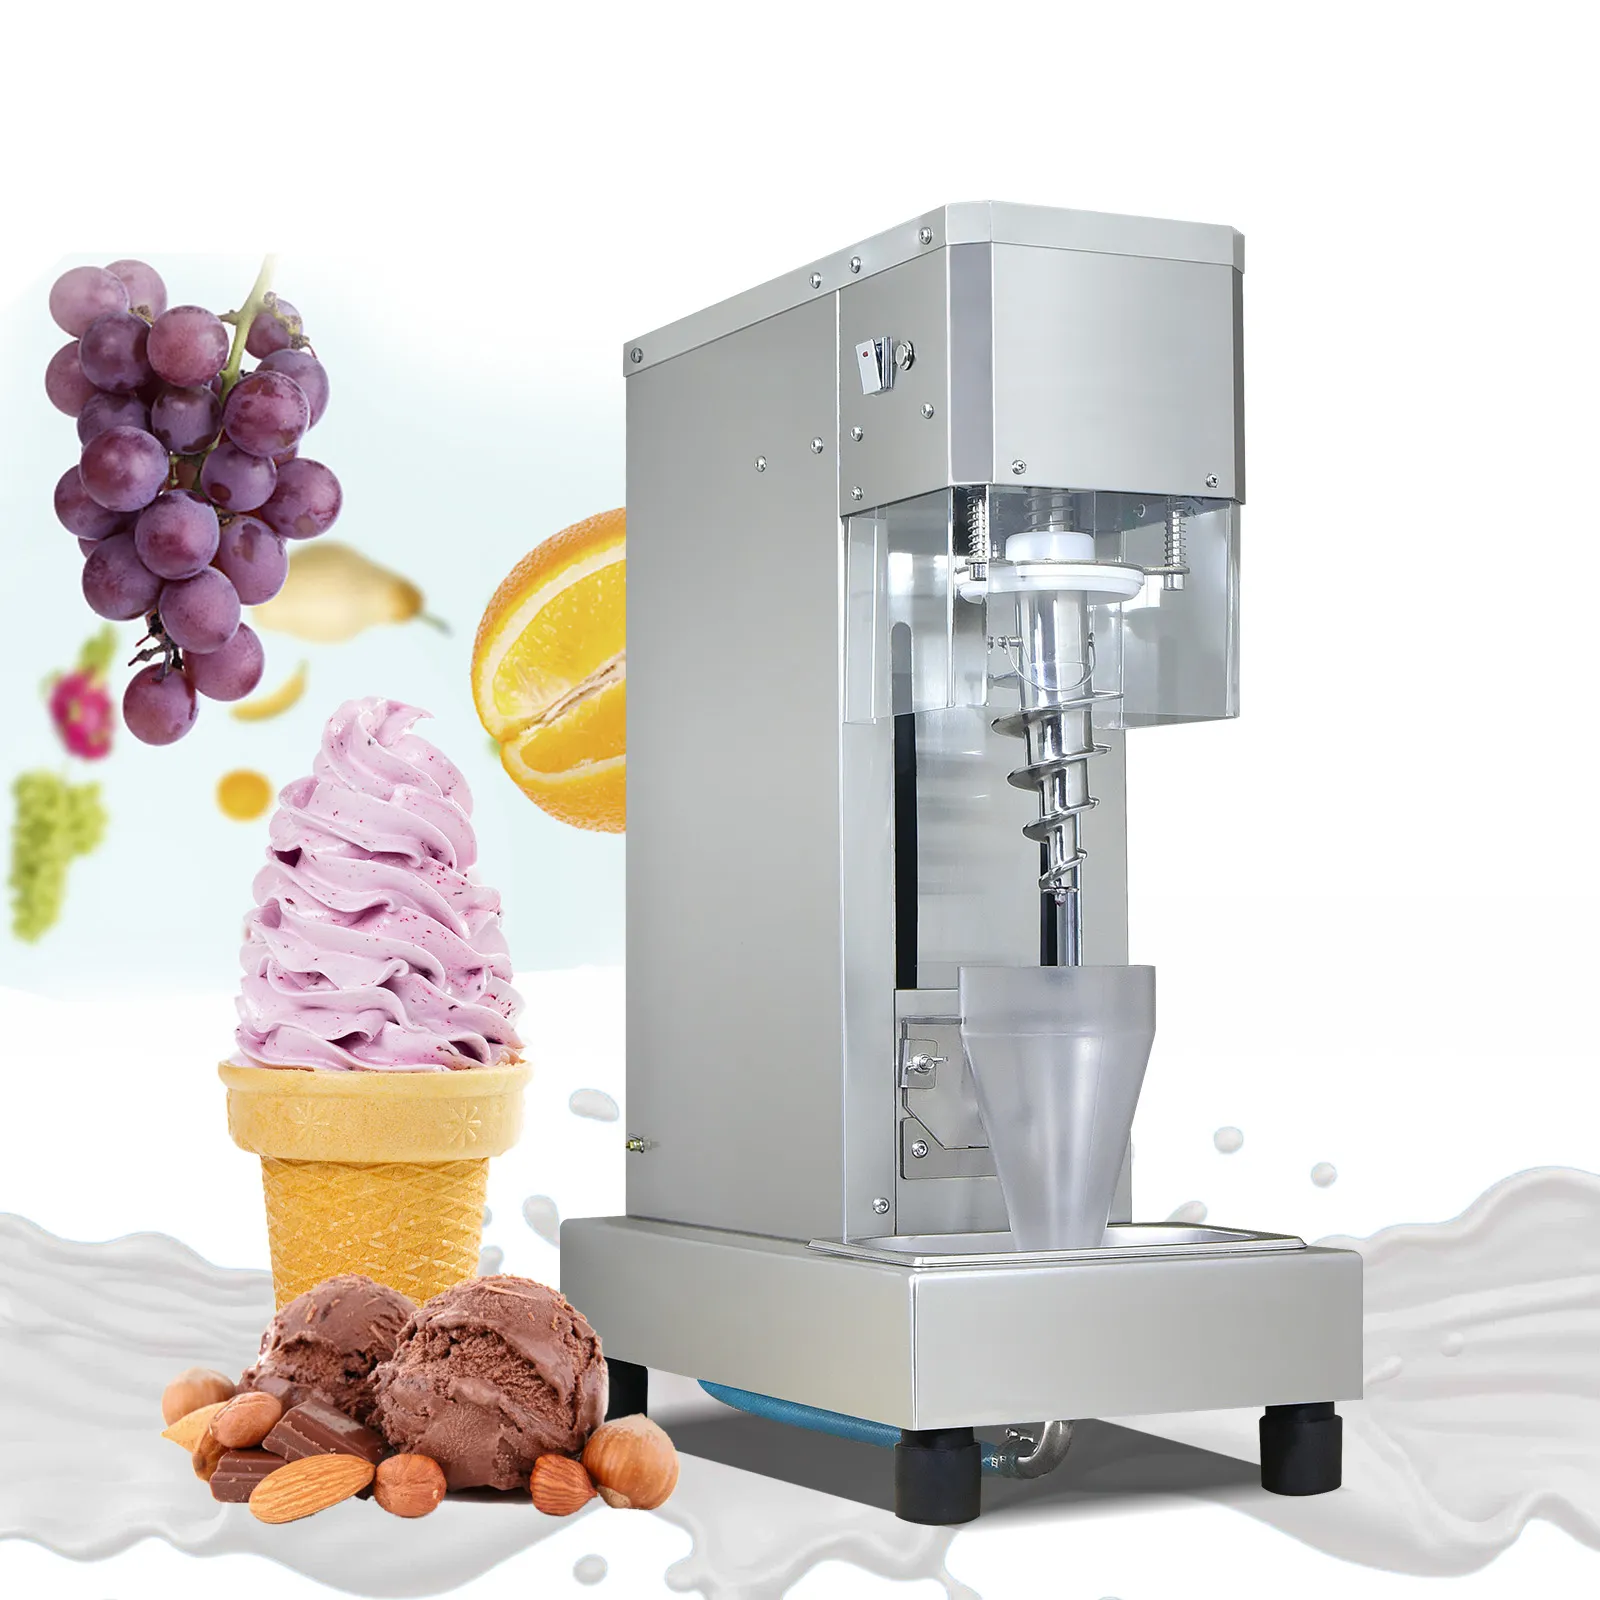 Kolice Free Shipment Milkshak Yogurtブレンディングマシンジェラートヨーグルトアイスクリームミキサーメーカーフローズンブレンダー